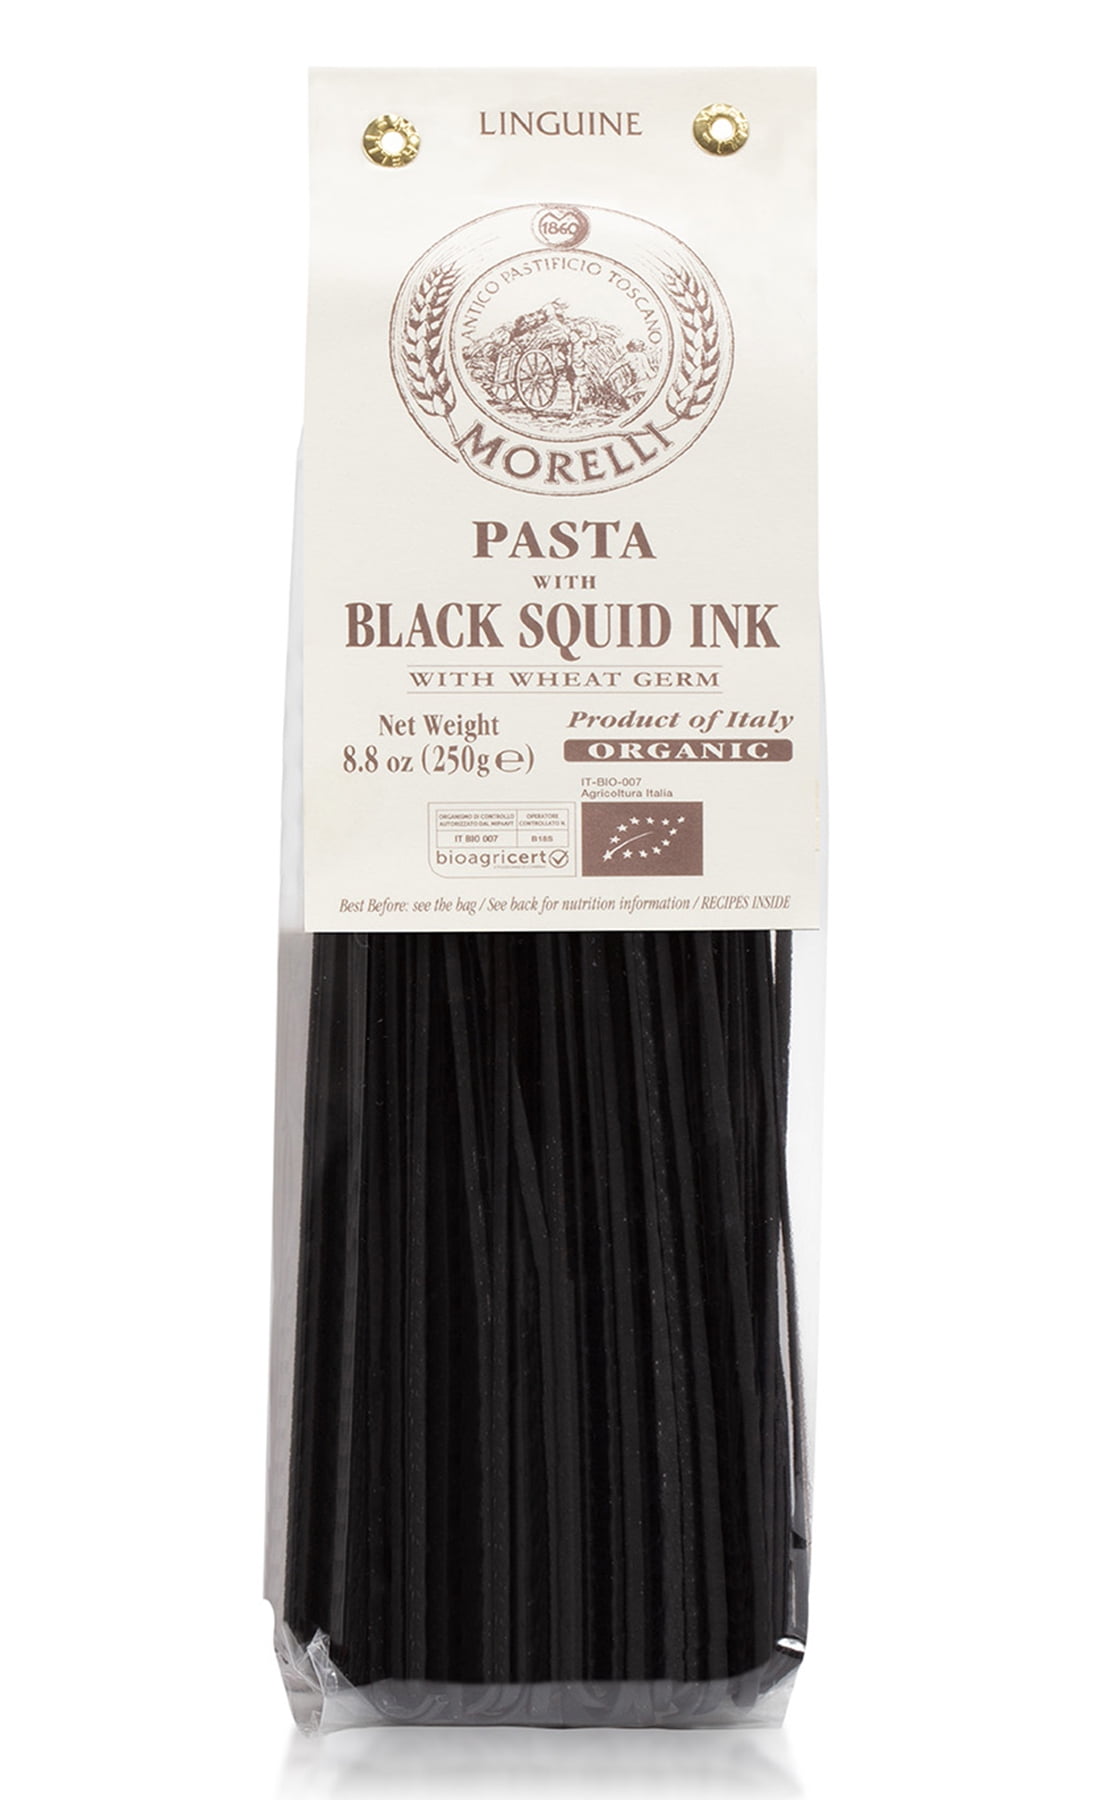 Black Squid Ink Pasta - The Pasta Twins